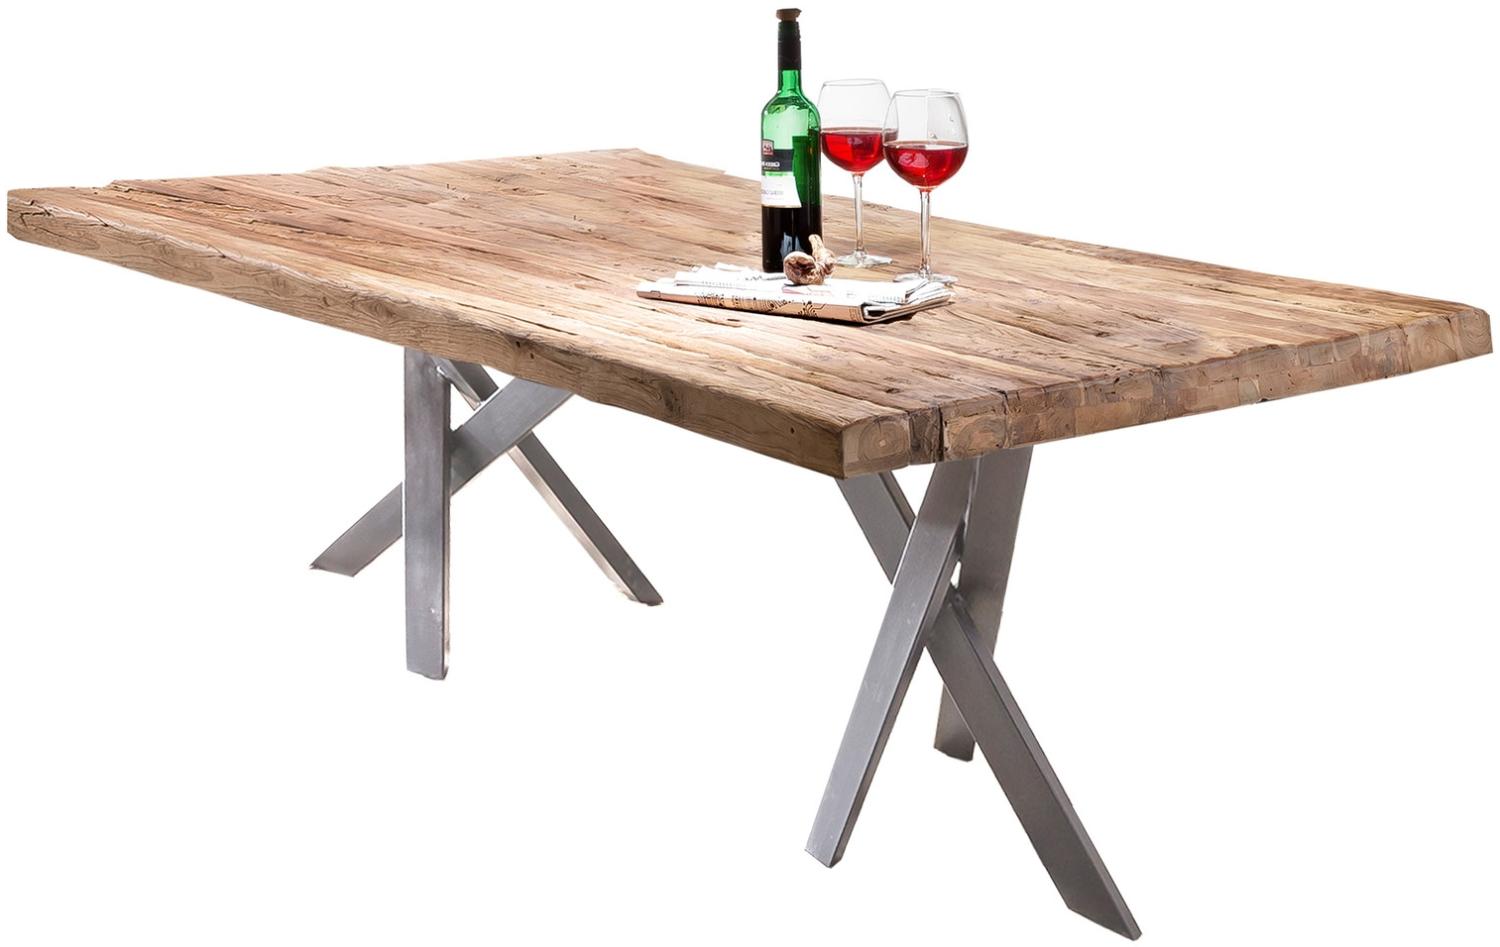 Sit Möbel Tische & Bänke Tisch 200x100 cm, Platte Teak natur, Gestell Metall antiksilber Bild 1